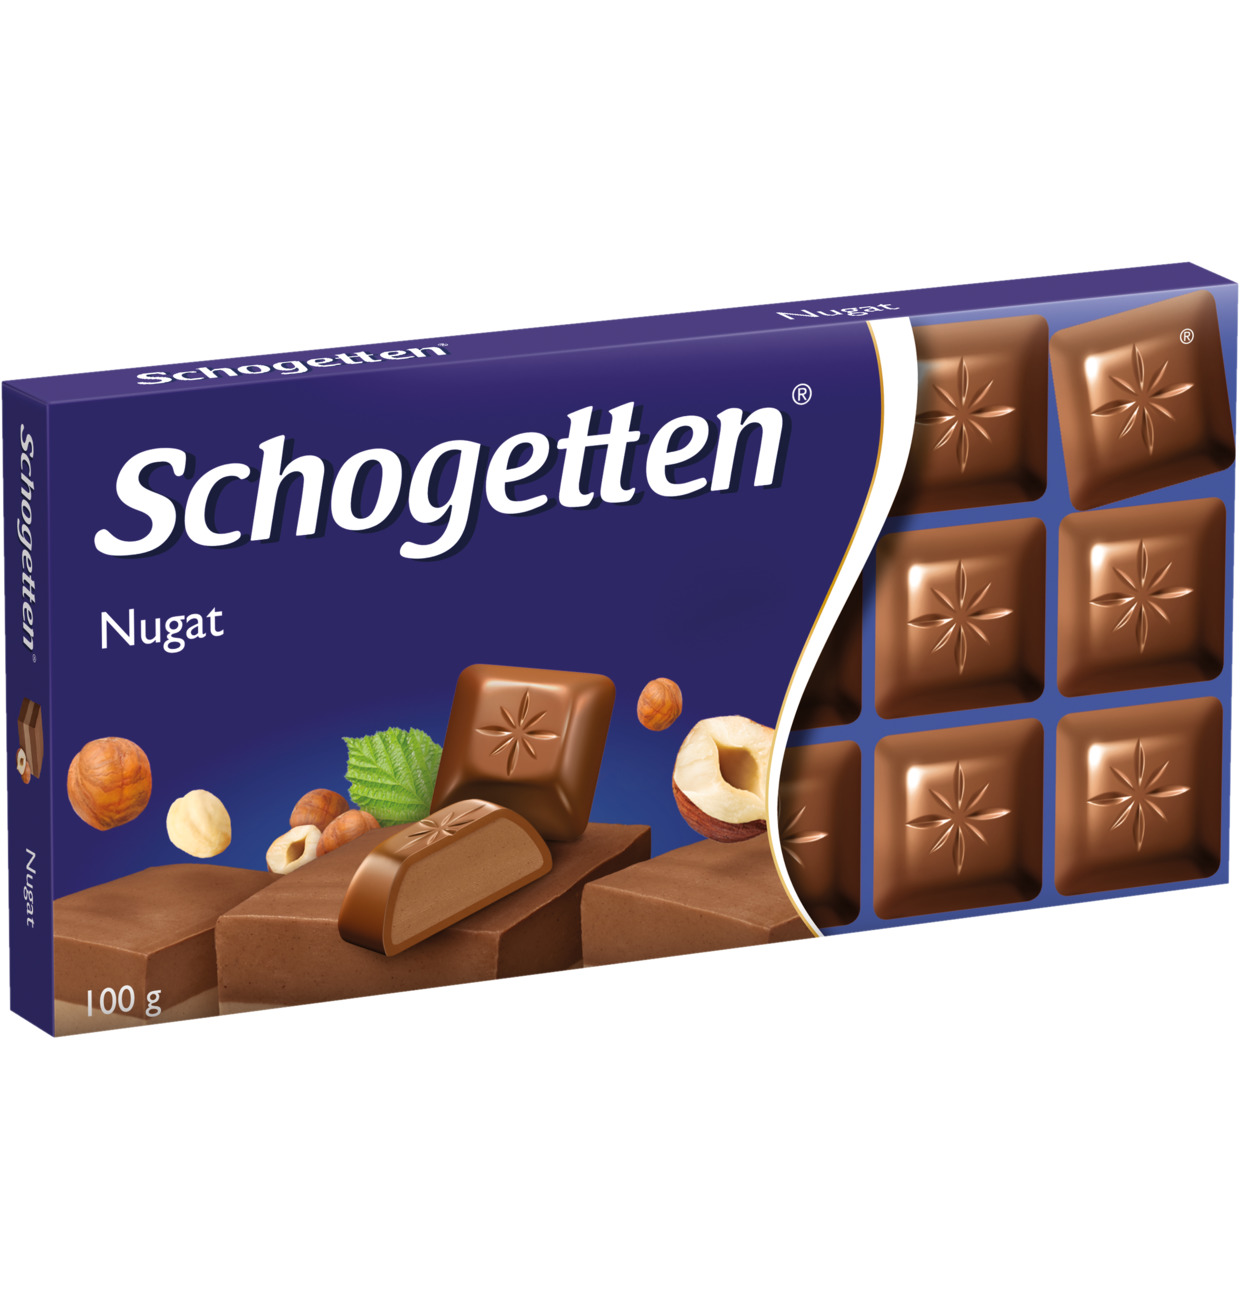 Schogetten Chocolate nougat 100g